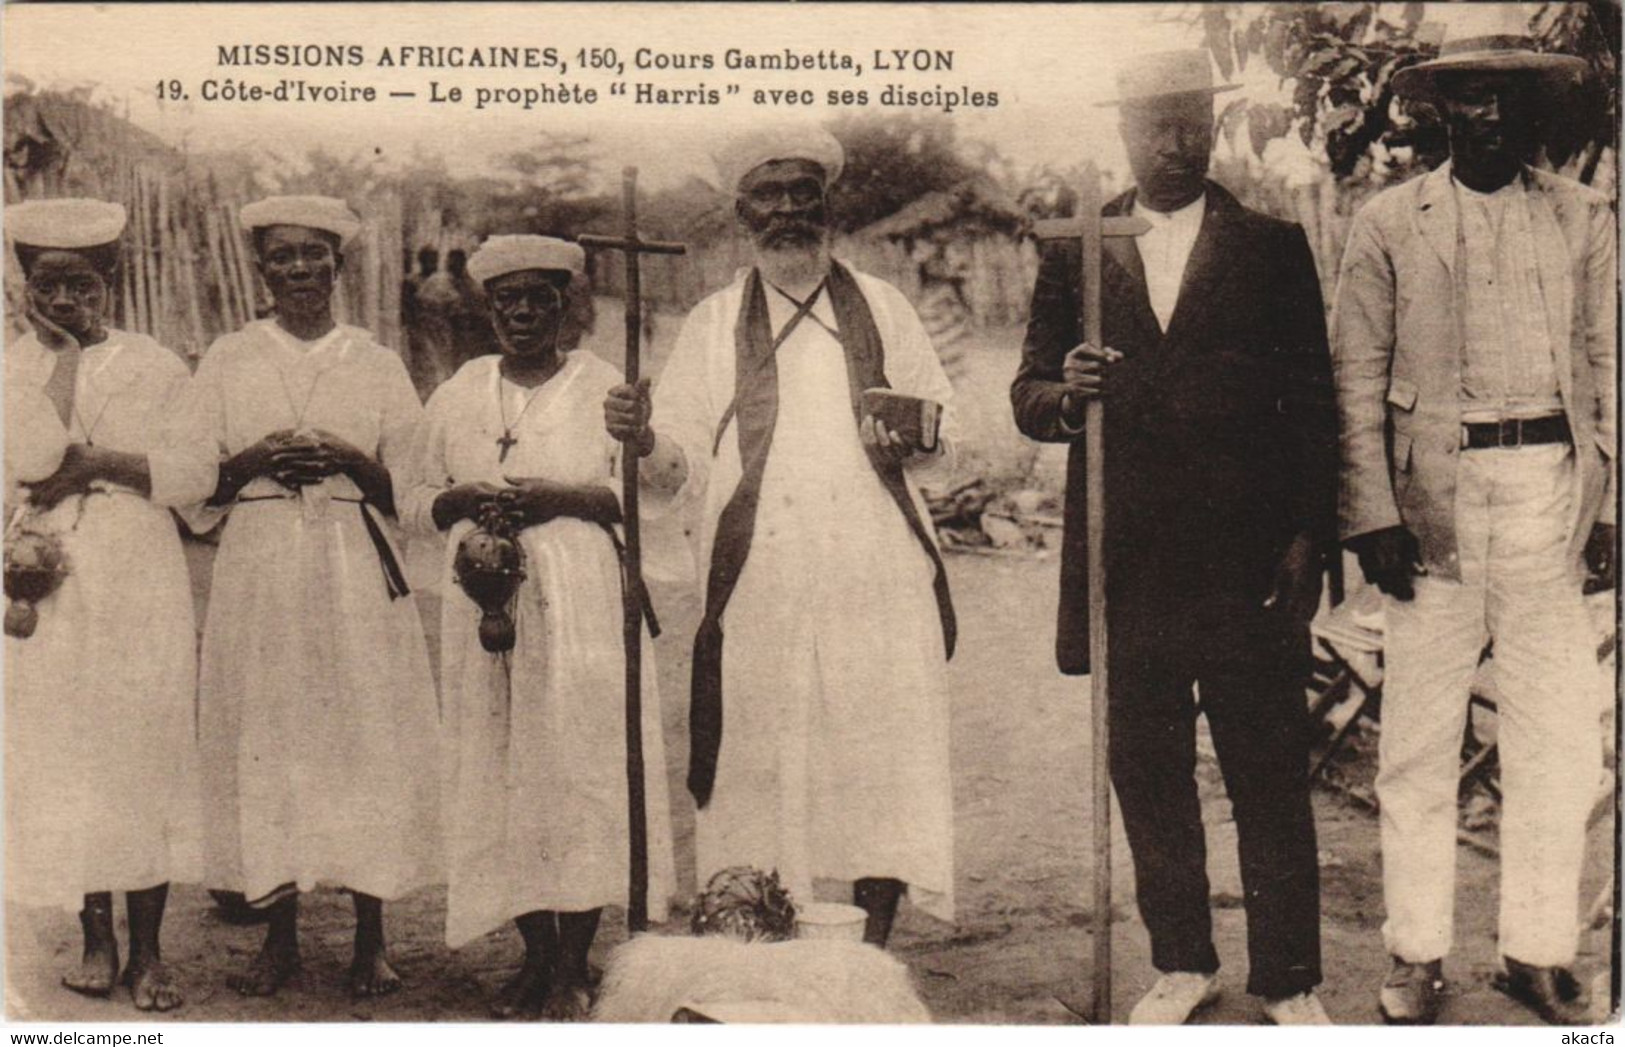 PC MISSIONARIES PROPHETE HARRIS AVEC SES DISCIPLINES IVORY COAST (a28297) - Côte-d'Ivoire